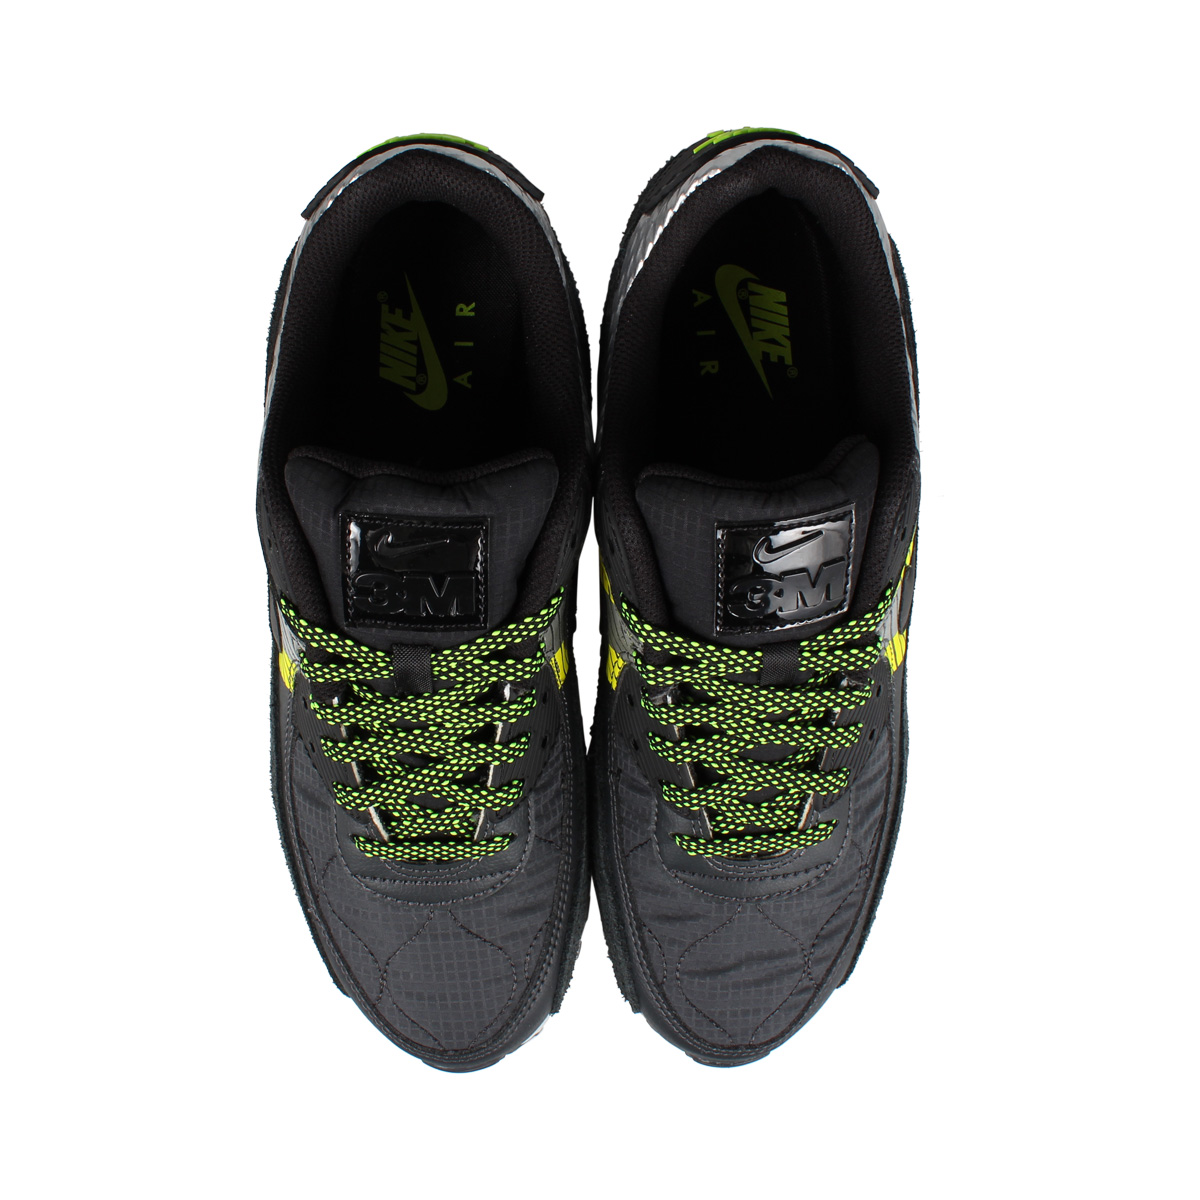 楽天市場 Nike ナイキ エアマックス90 スニーカー メンズ Air Max 90 3m ブラック 黒 Cz2975 002 シュガーオンラインショップ